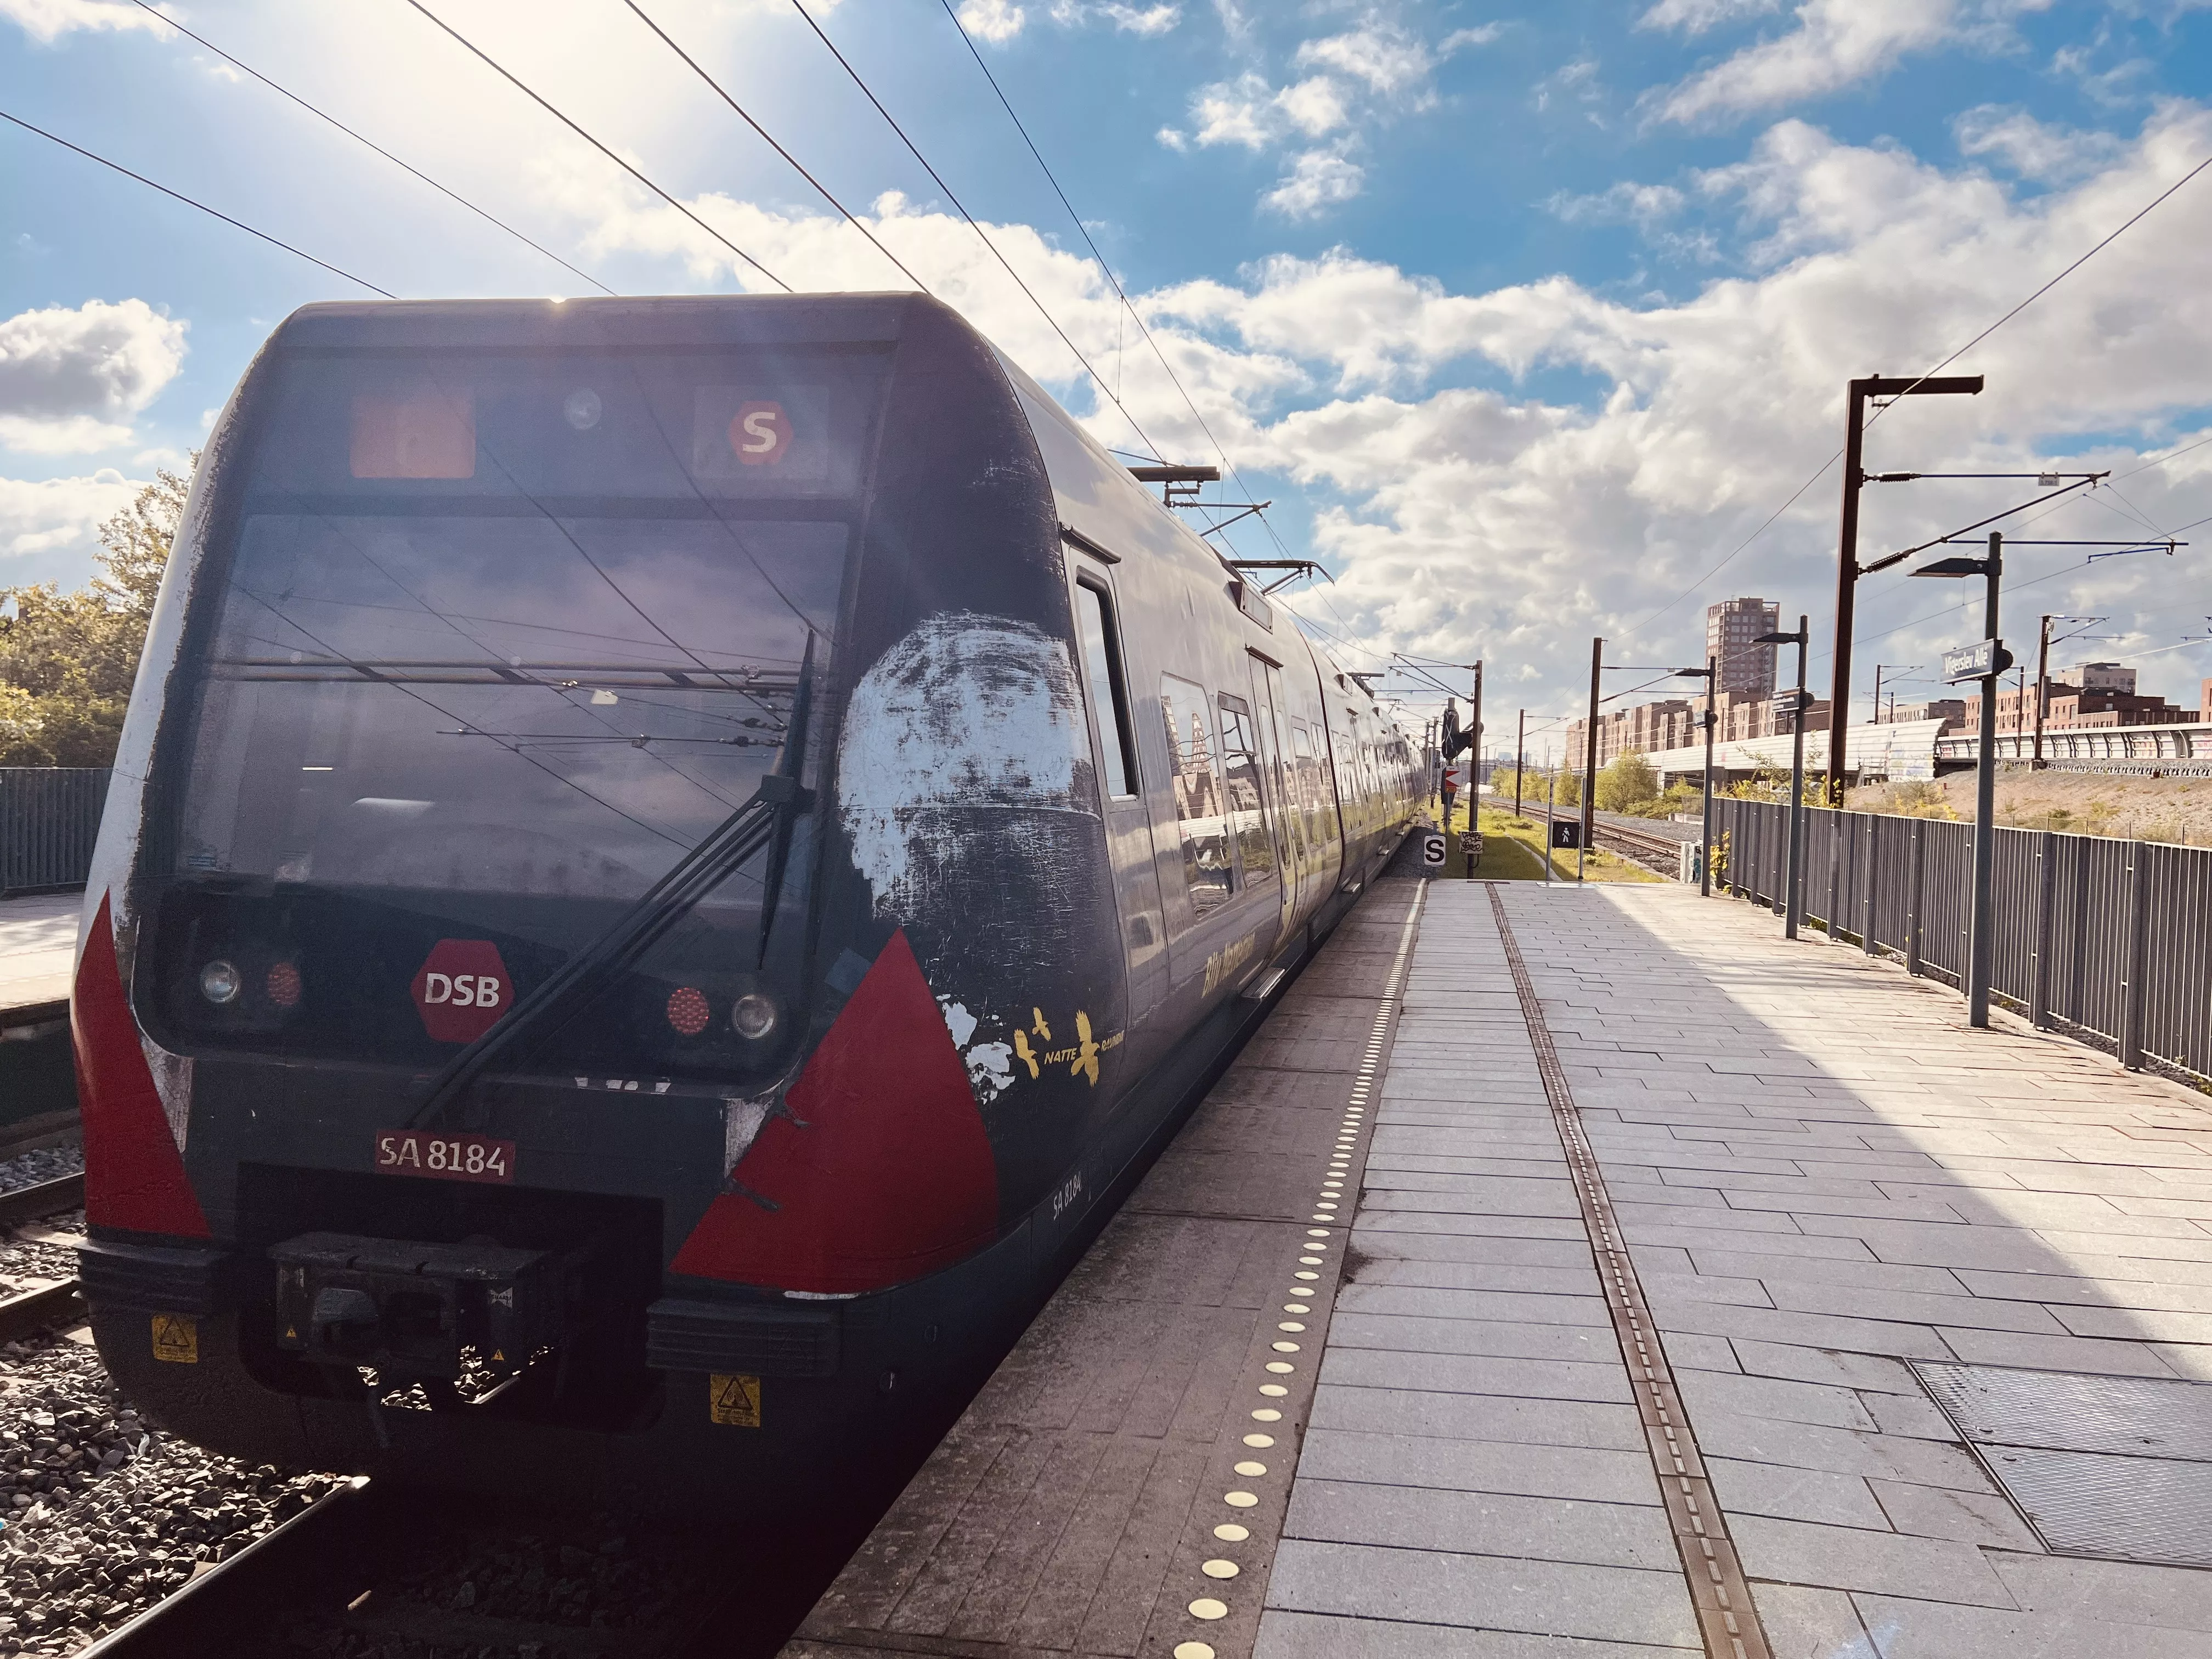 Billede af tog ud for Vigerslev Allé Trinbræt.